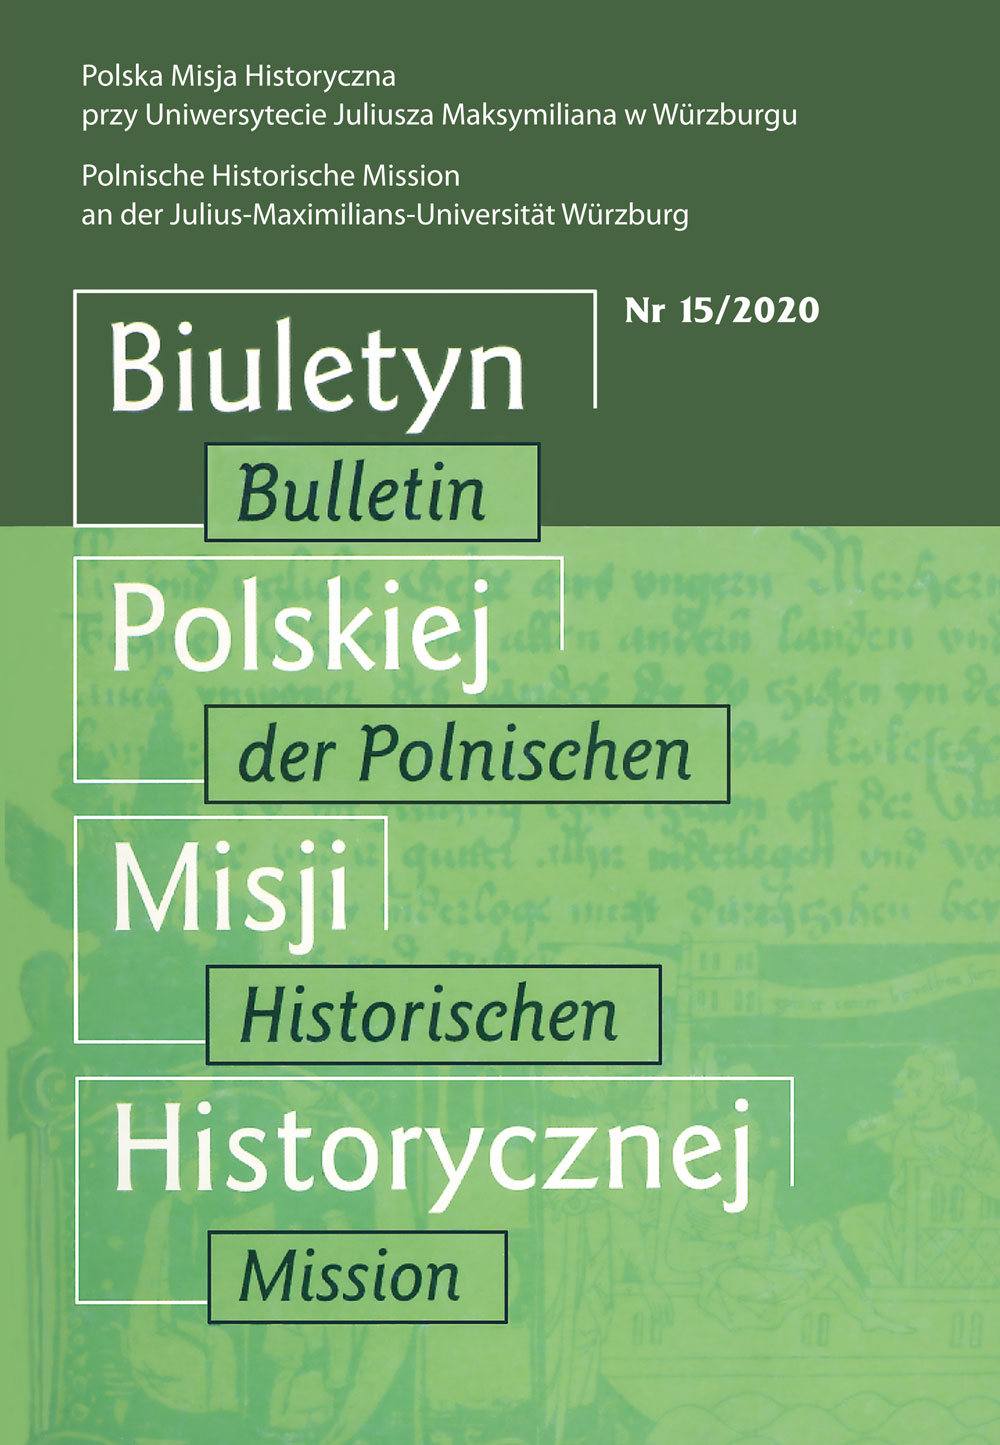 Bulletin der Polnischen Historischen Mission